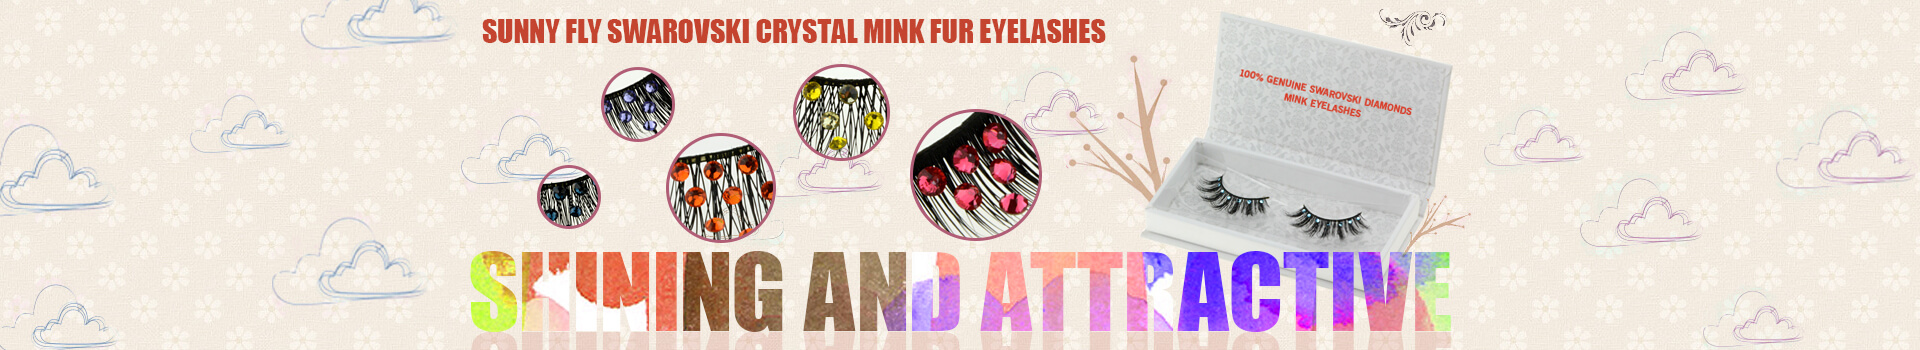 Swarovski Crystal Mink Fur Eyelashes MS01